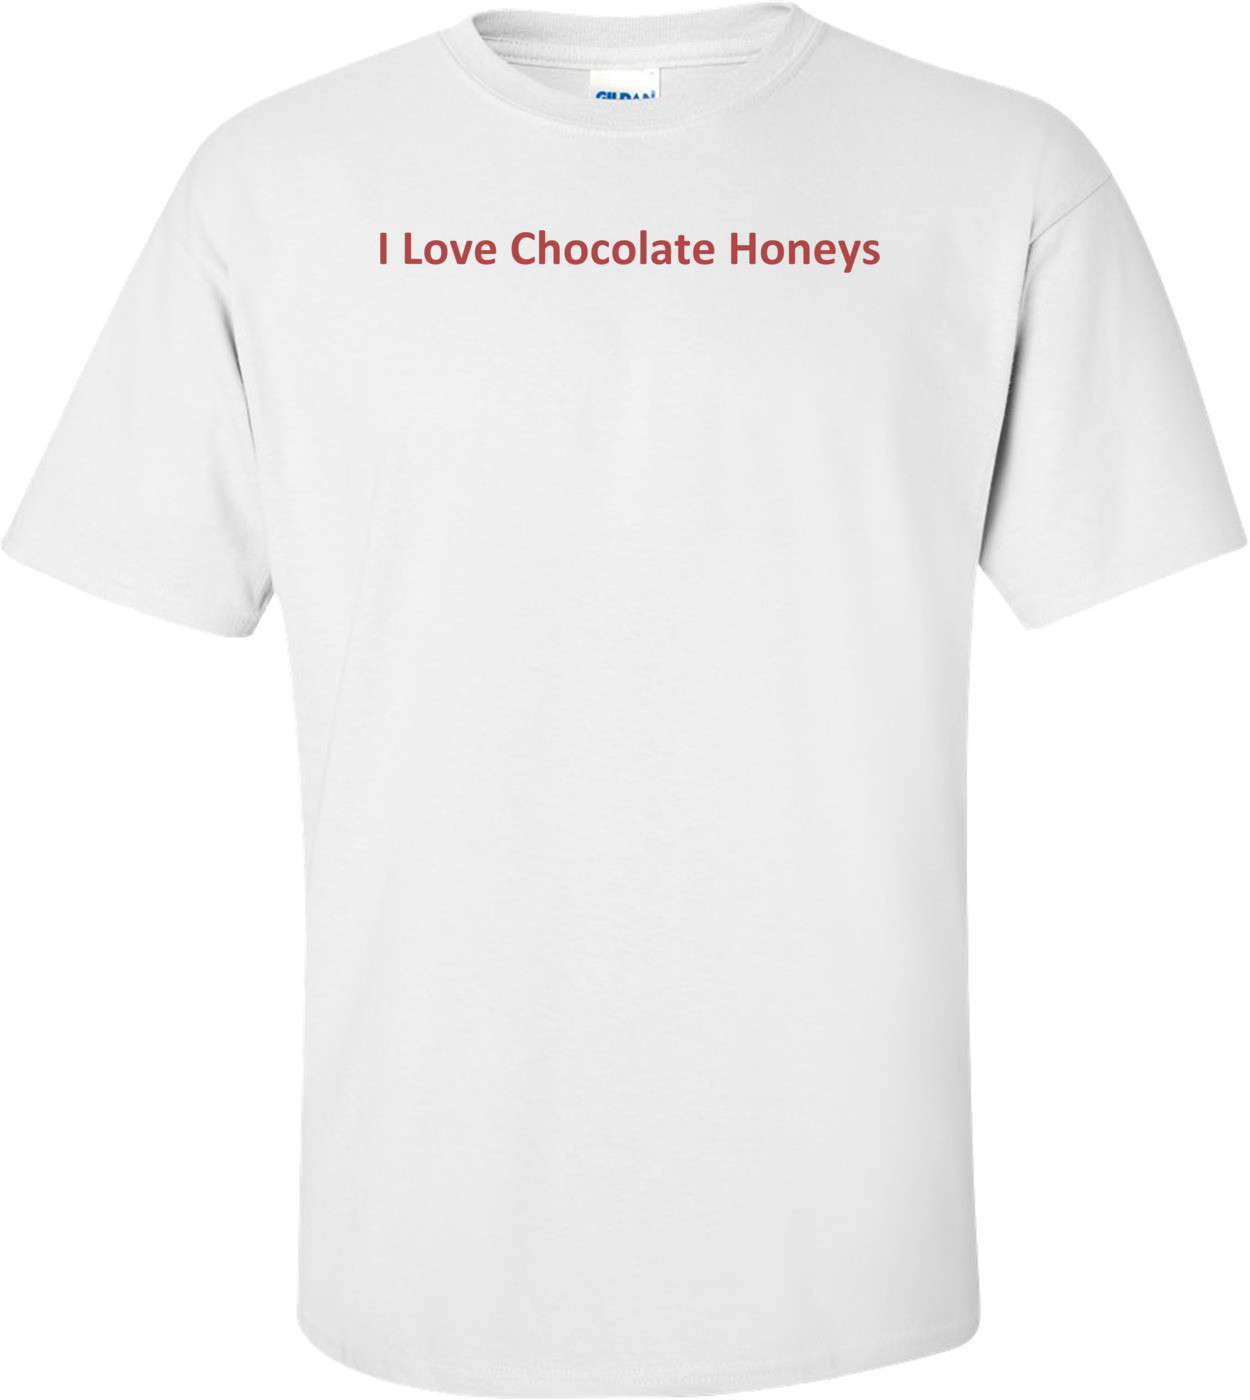 I Love Chocolate Honeys